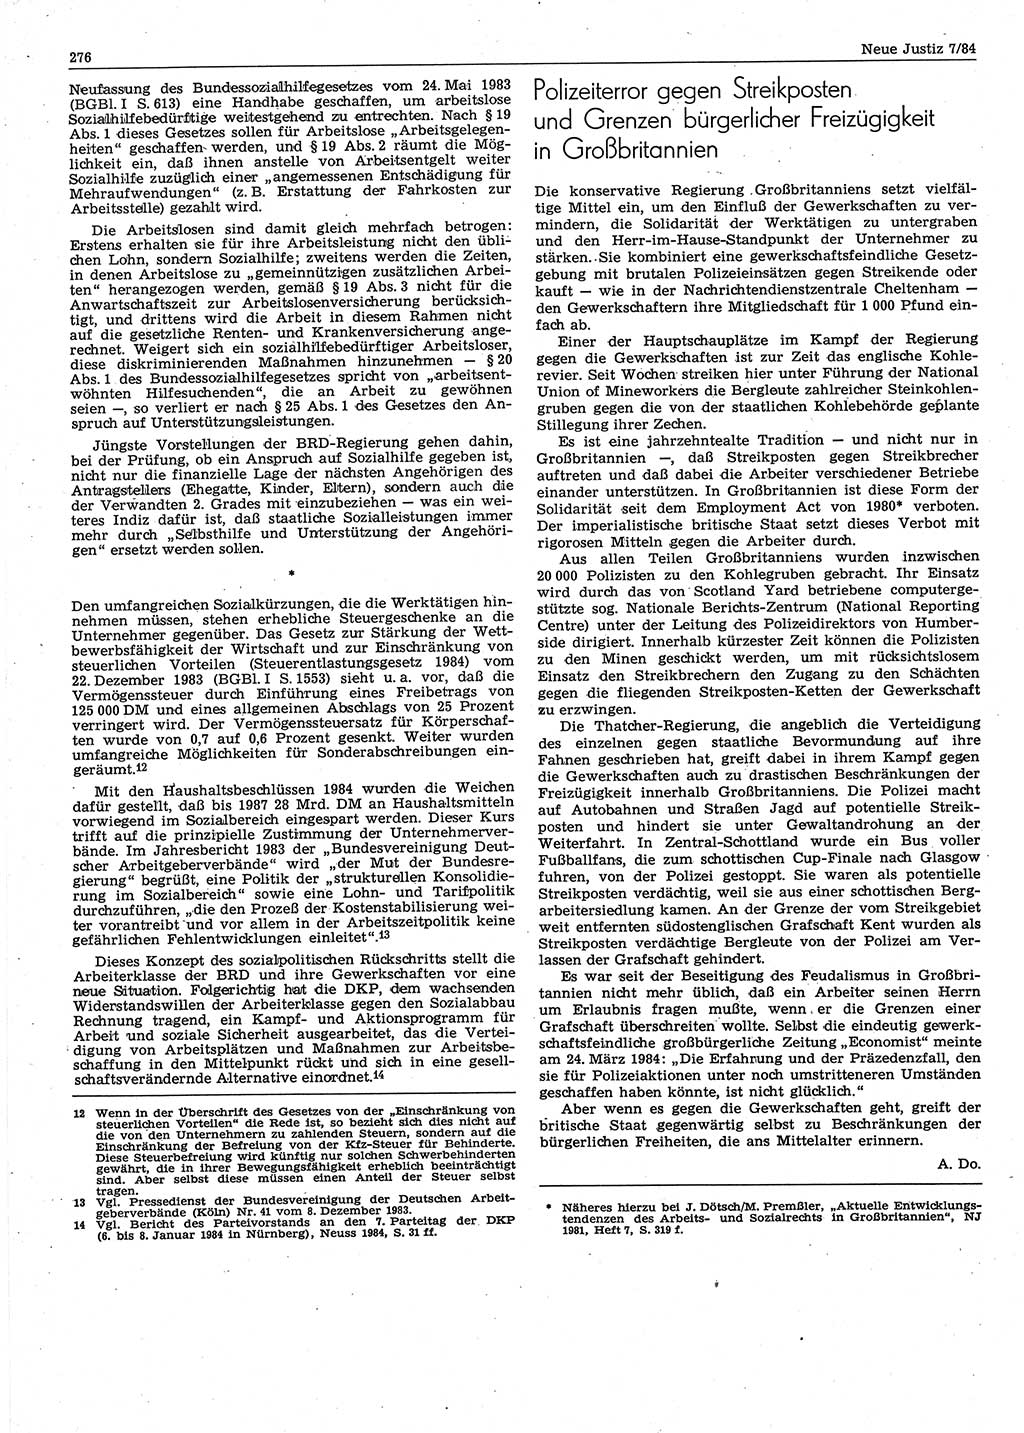 Neue Justiz (NJ), Zeitschrift für sozialistisches Recht und Gesetzlichkeit [Deutsche Demokratische Republik (DDR)], 38. Jahrgang 1984, Seite 276 (NJ DDR 1984, S. 276)